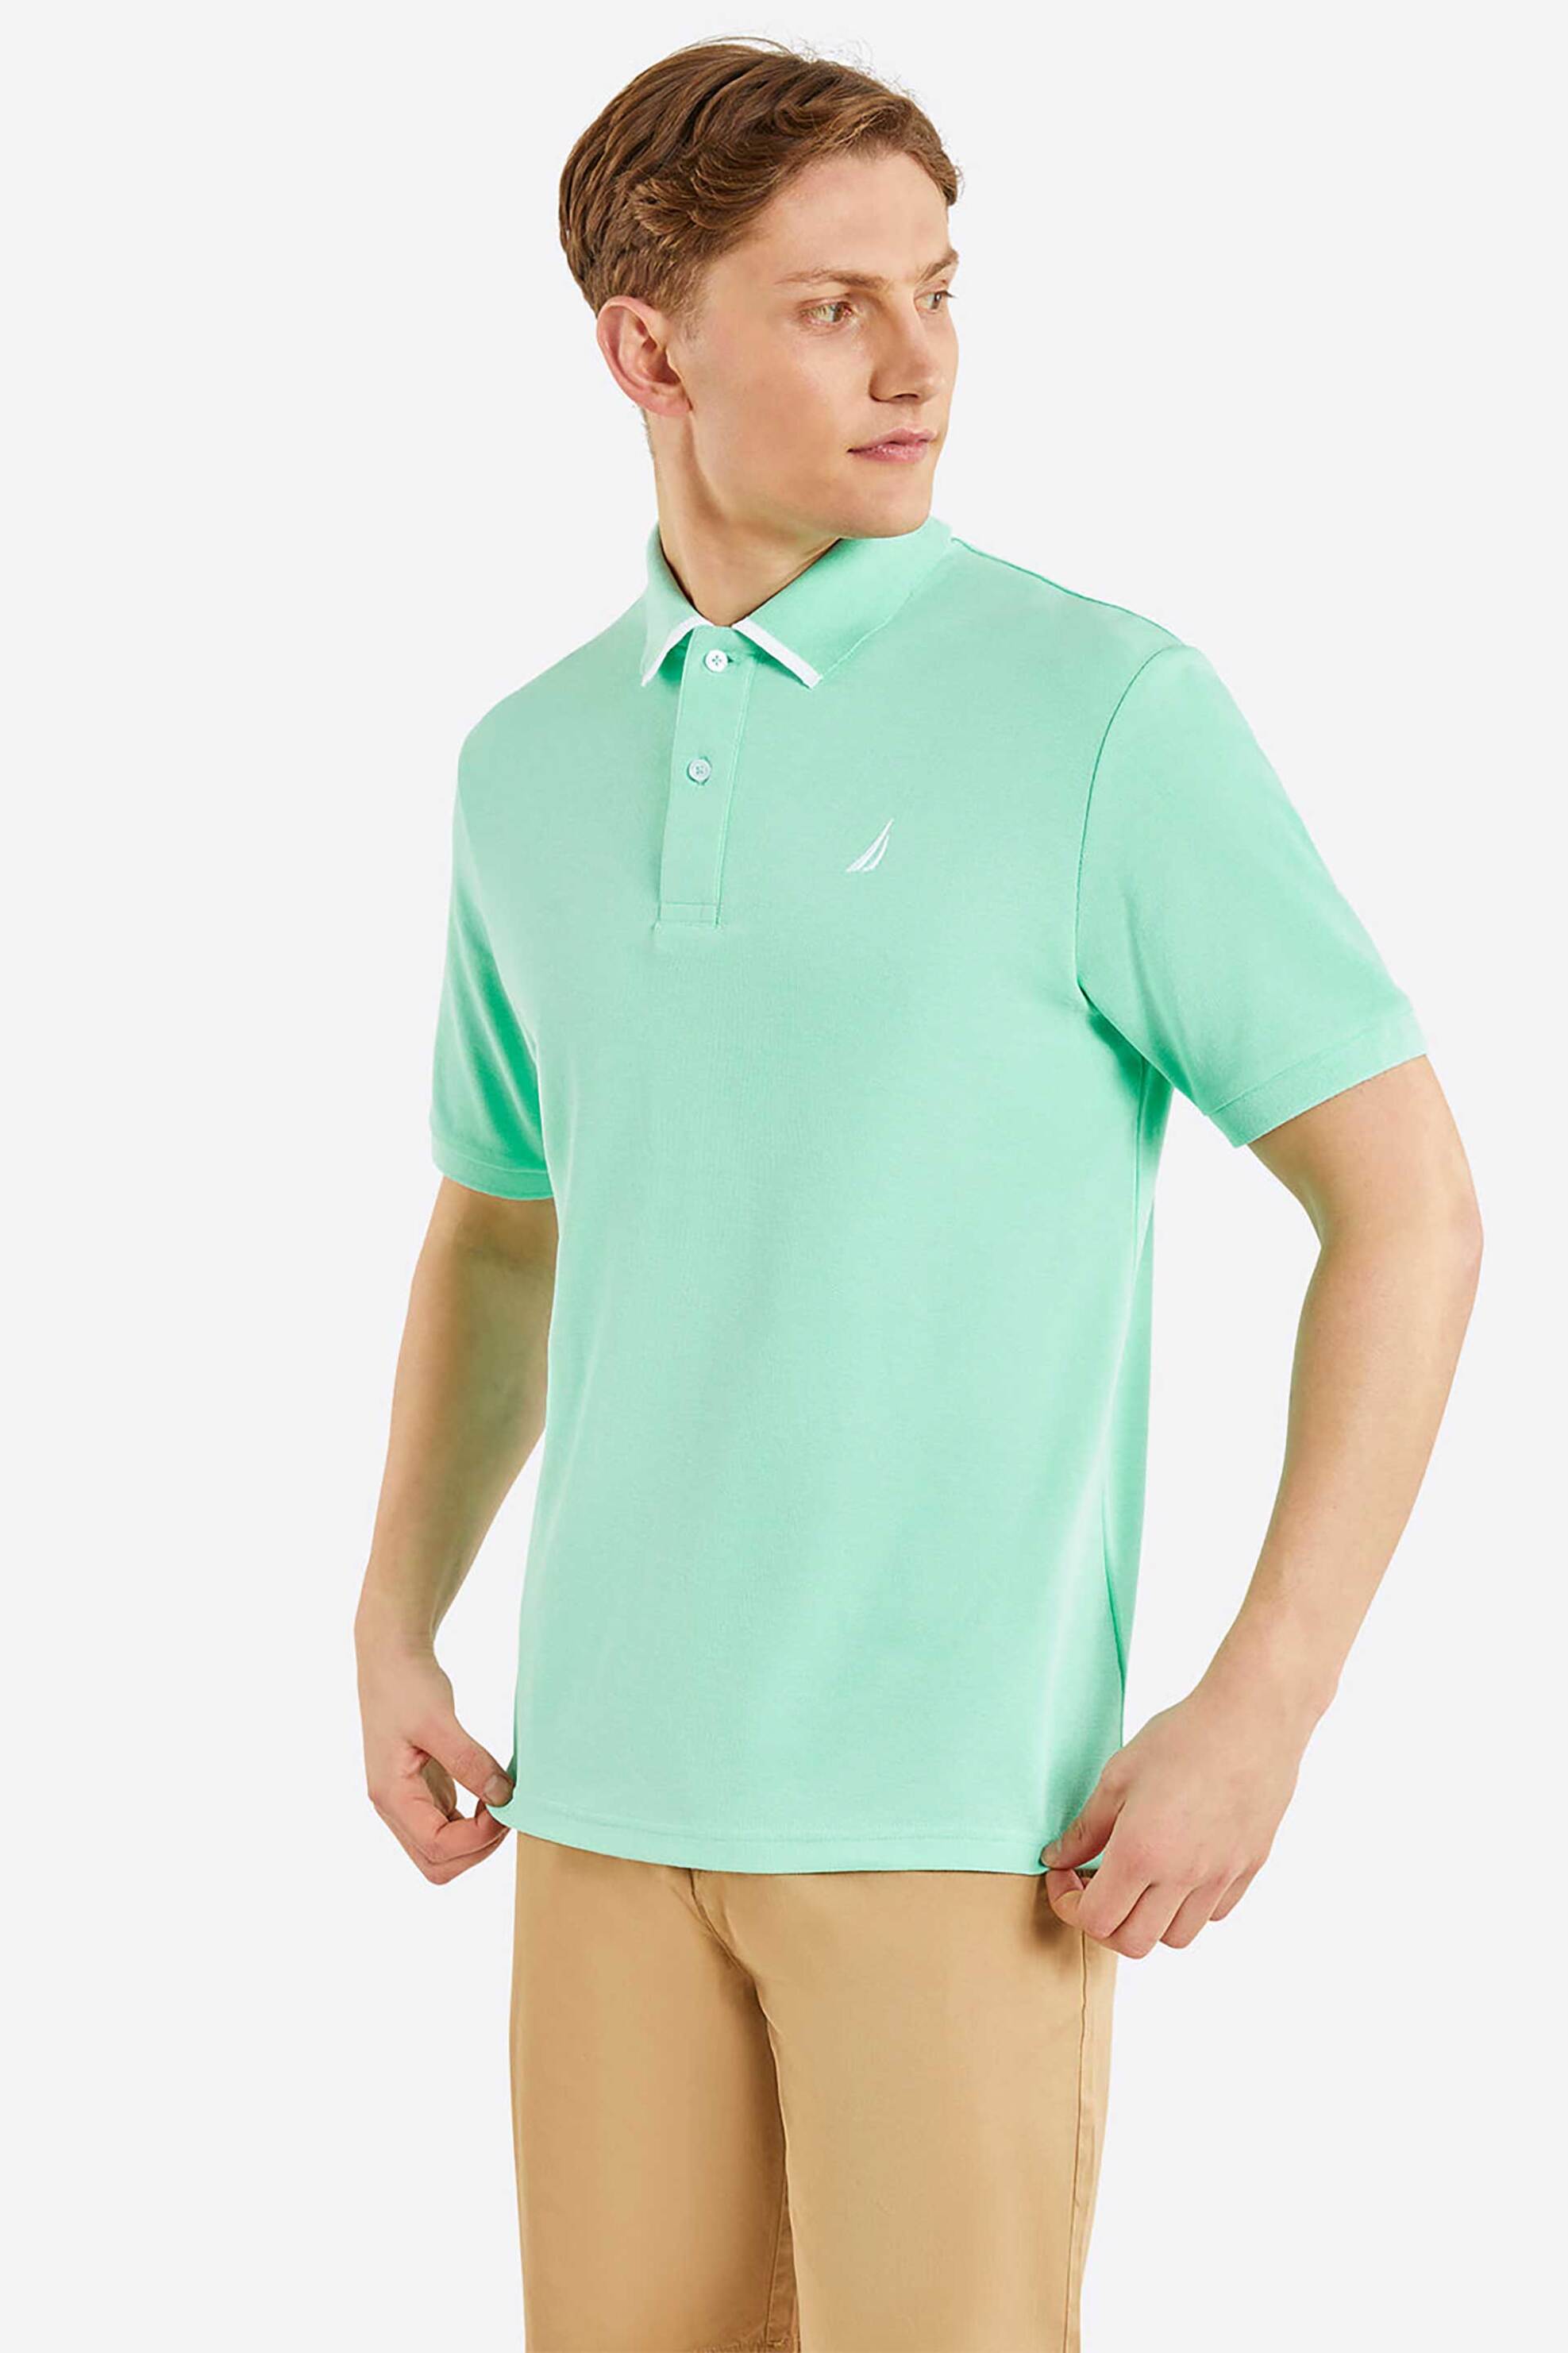 Ανδρική Μόδα > Ανδρικά Ρούχα > Ανδρικές Μπλούζες > Ανδρικές Μπλούζες Πολο Nautica ανδρική πόλο μπλούζα μονόχρωμη με contrast λογότυπο στον γιακά "Mellis" - N1N02582 Πράσινο Μέντας